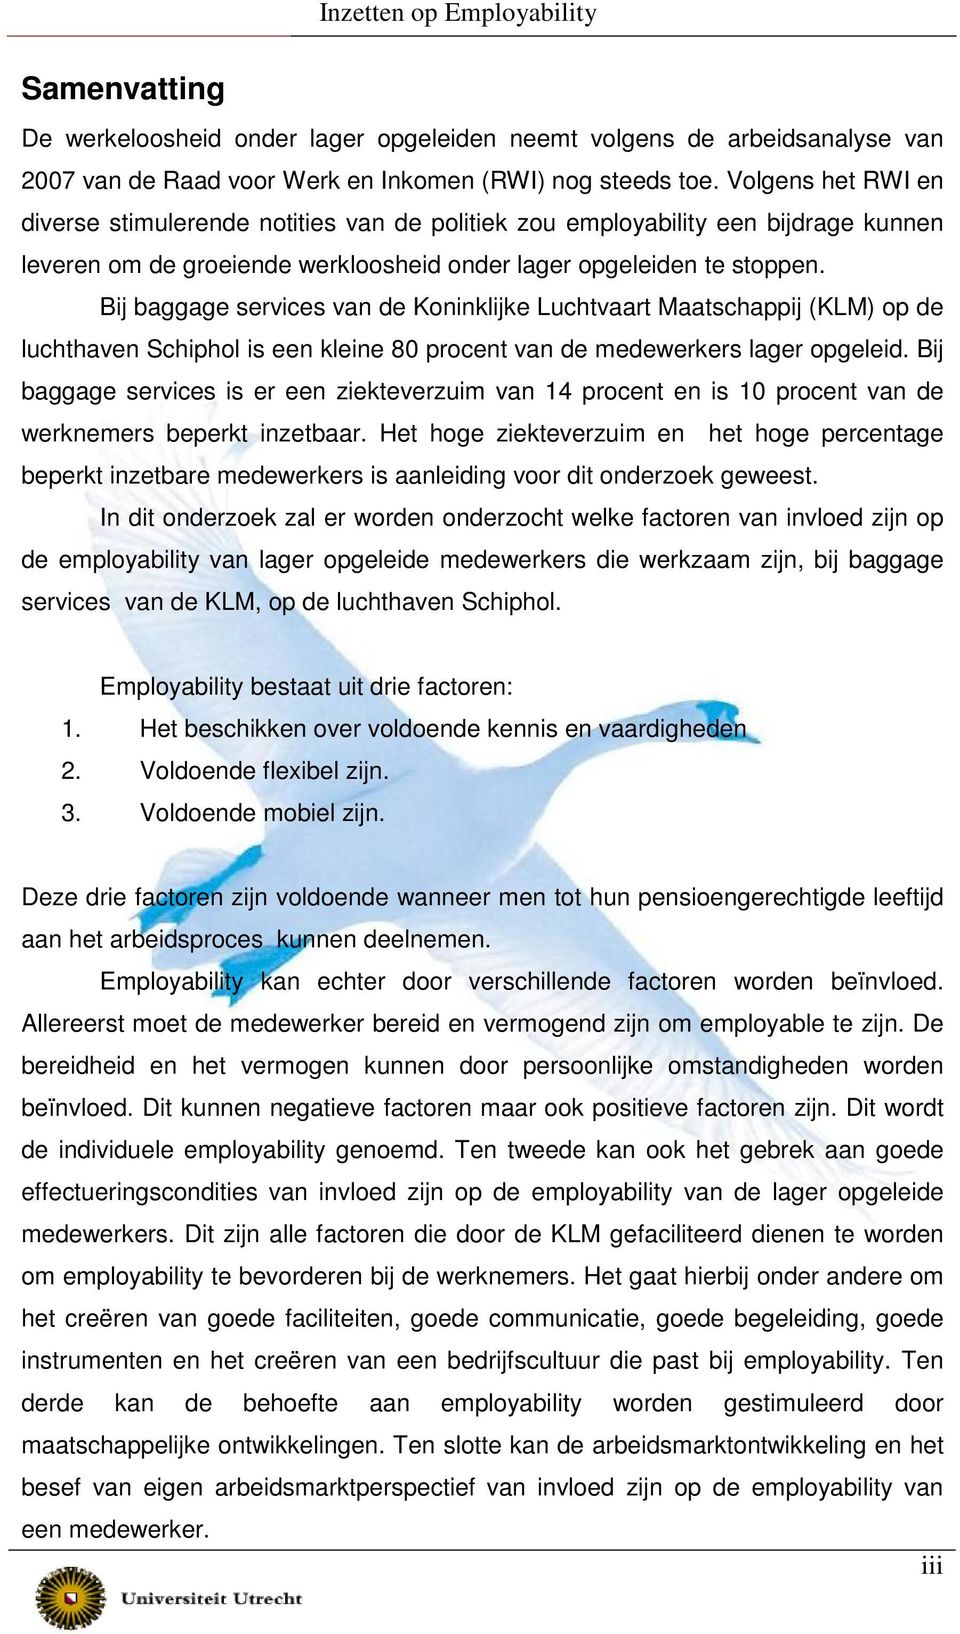 Bij baggage services van de Koninklijke Luchtvaart Maatschappij (KLM) op de luchthaven Schiphol is een kleine 80 procent van de medewerkers lager opgeleid.